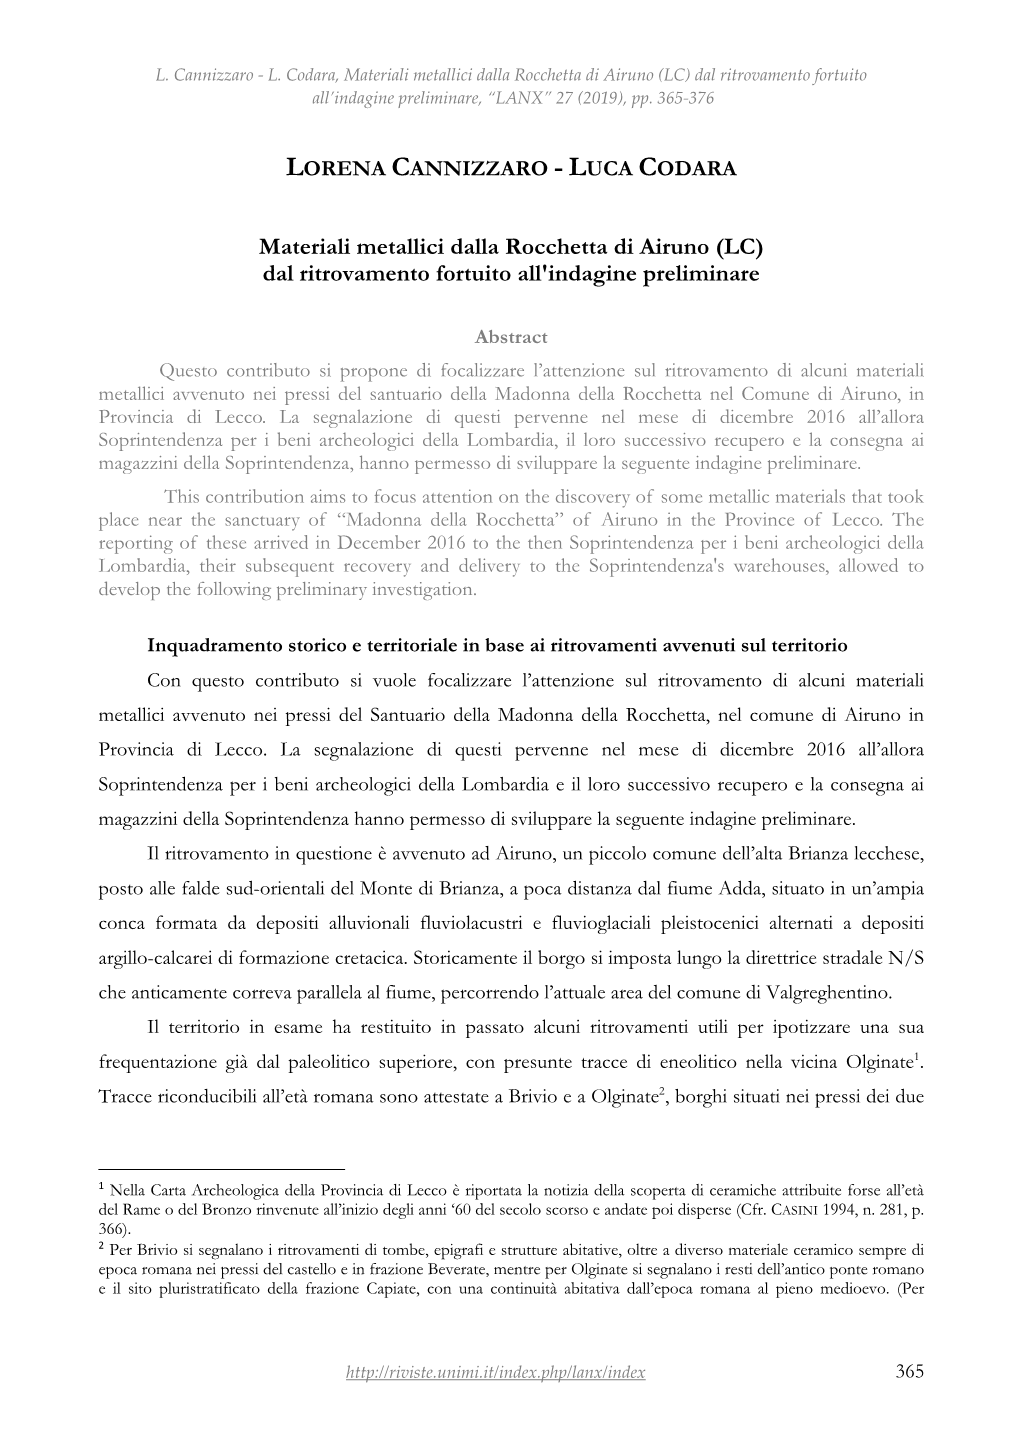 Materiali Metallici Dalla Rocchetta Di Airuno (LC) Dal Ritrovamento Fortuito All’Indagine Preliminare, “LANX” 27 (2019), Pp